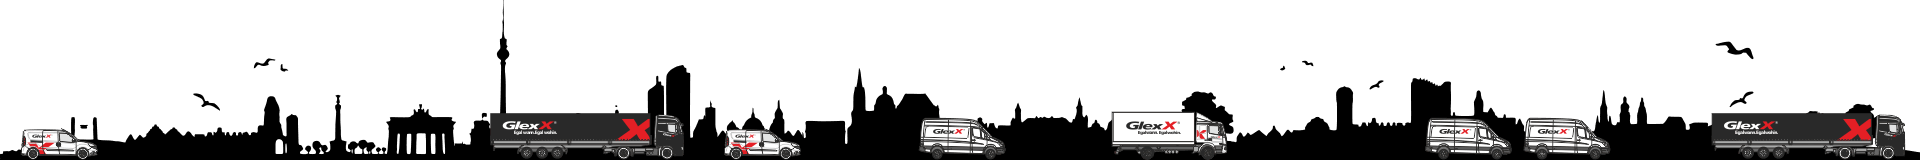 GlexX Spedition – Europaweit